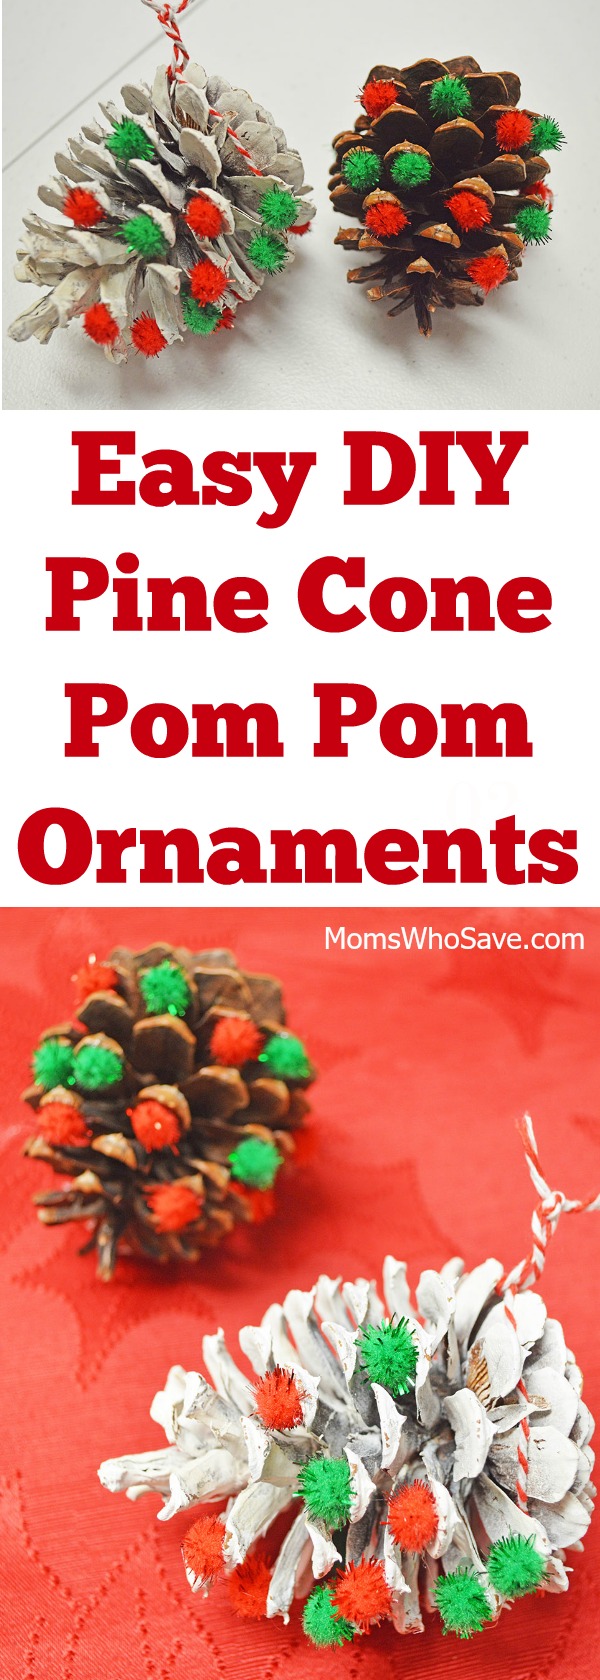 diy pine cone ornaments